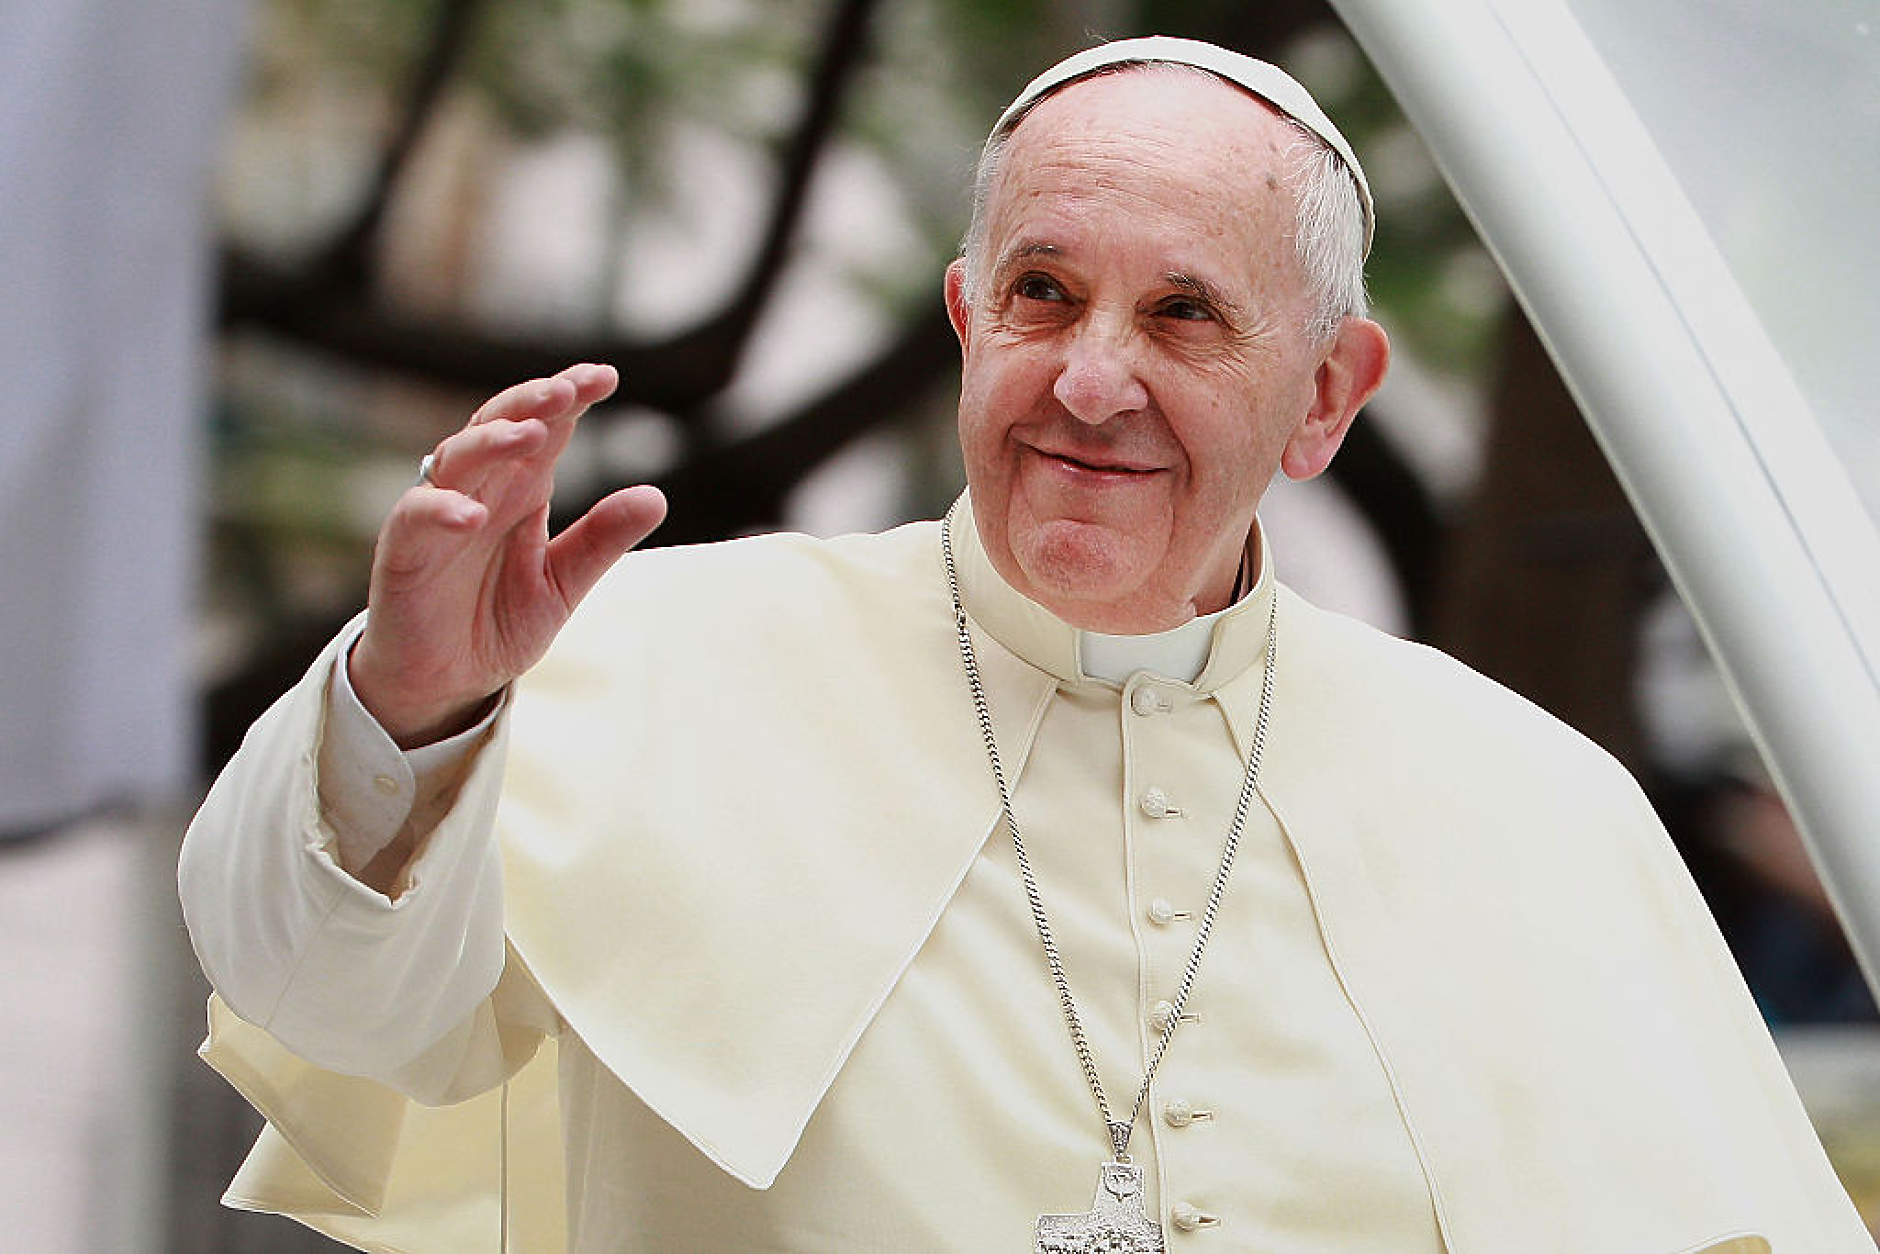 Папата национализира всички активи и имущество на Ватикана